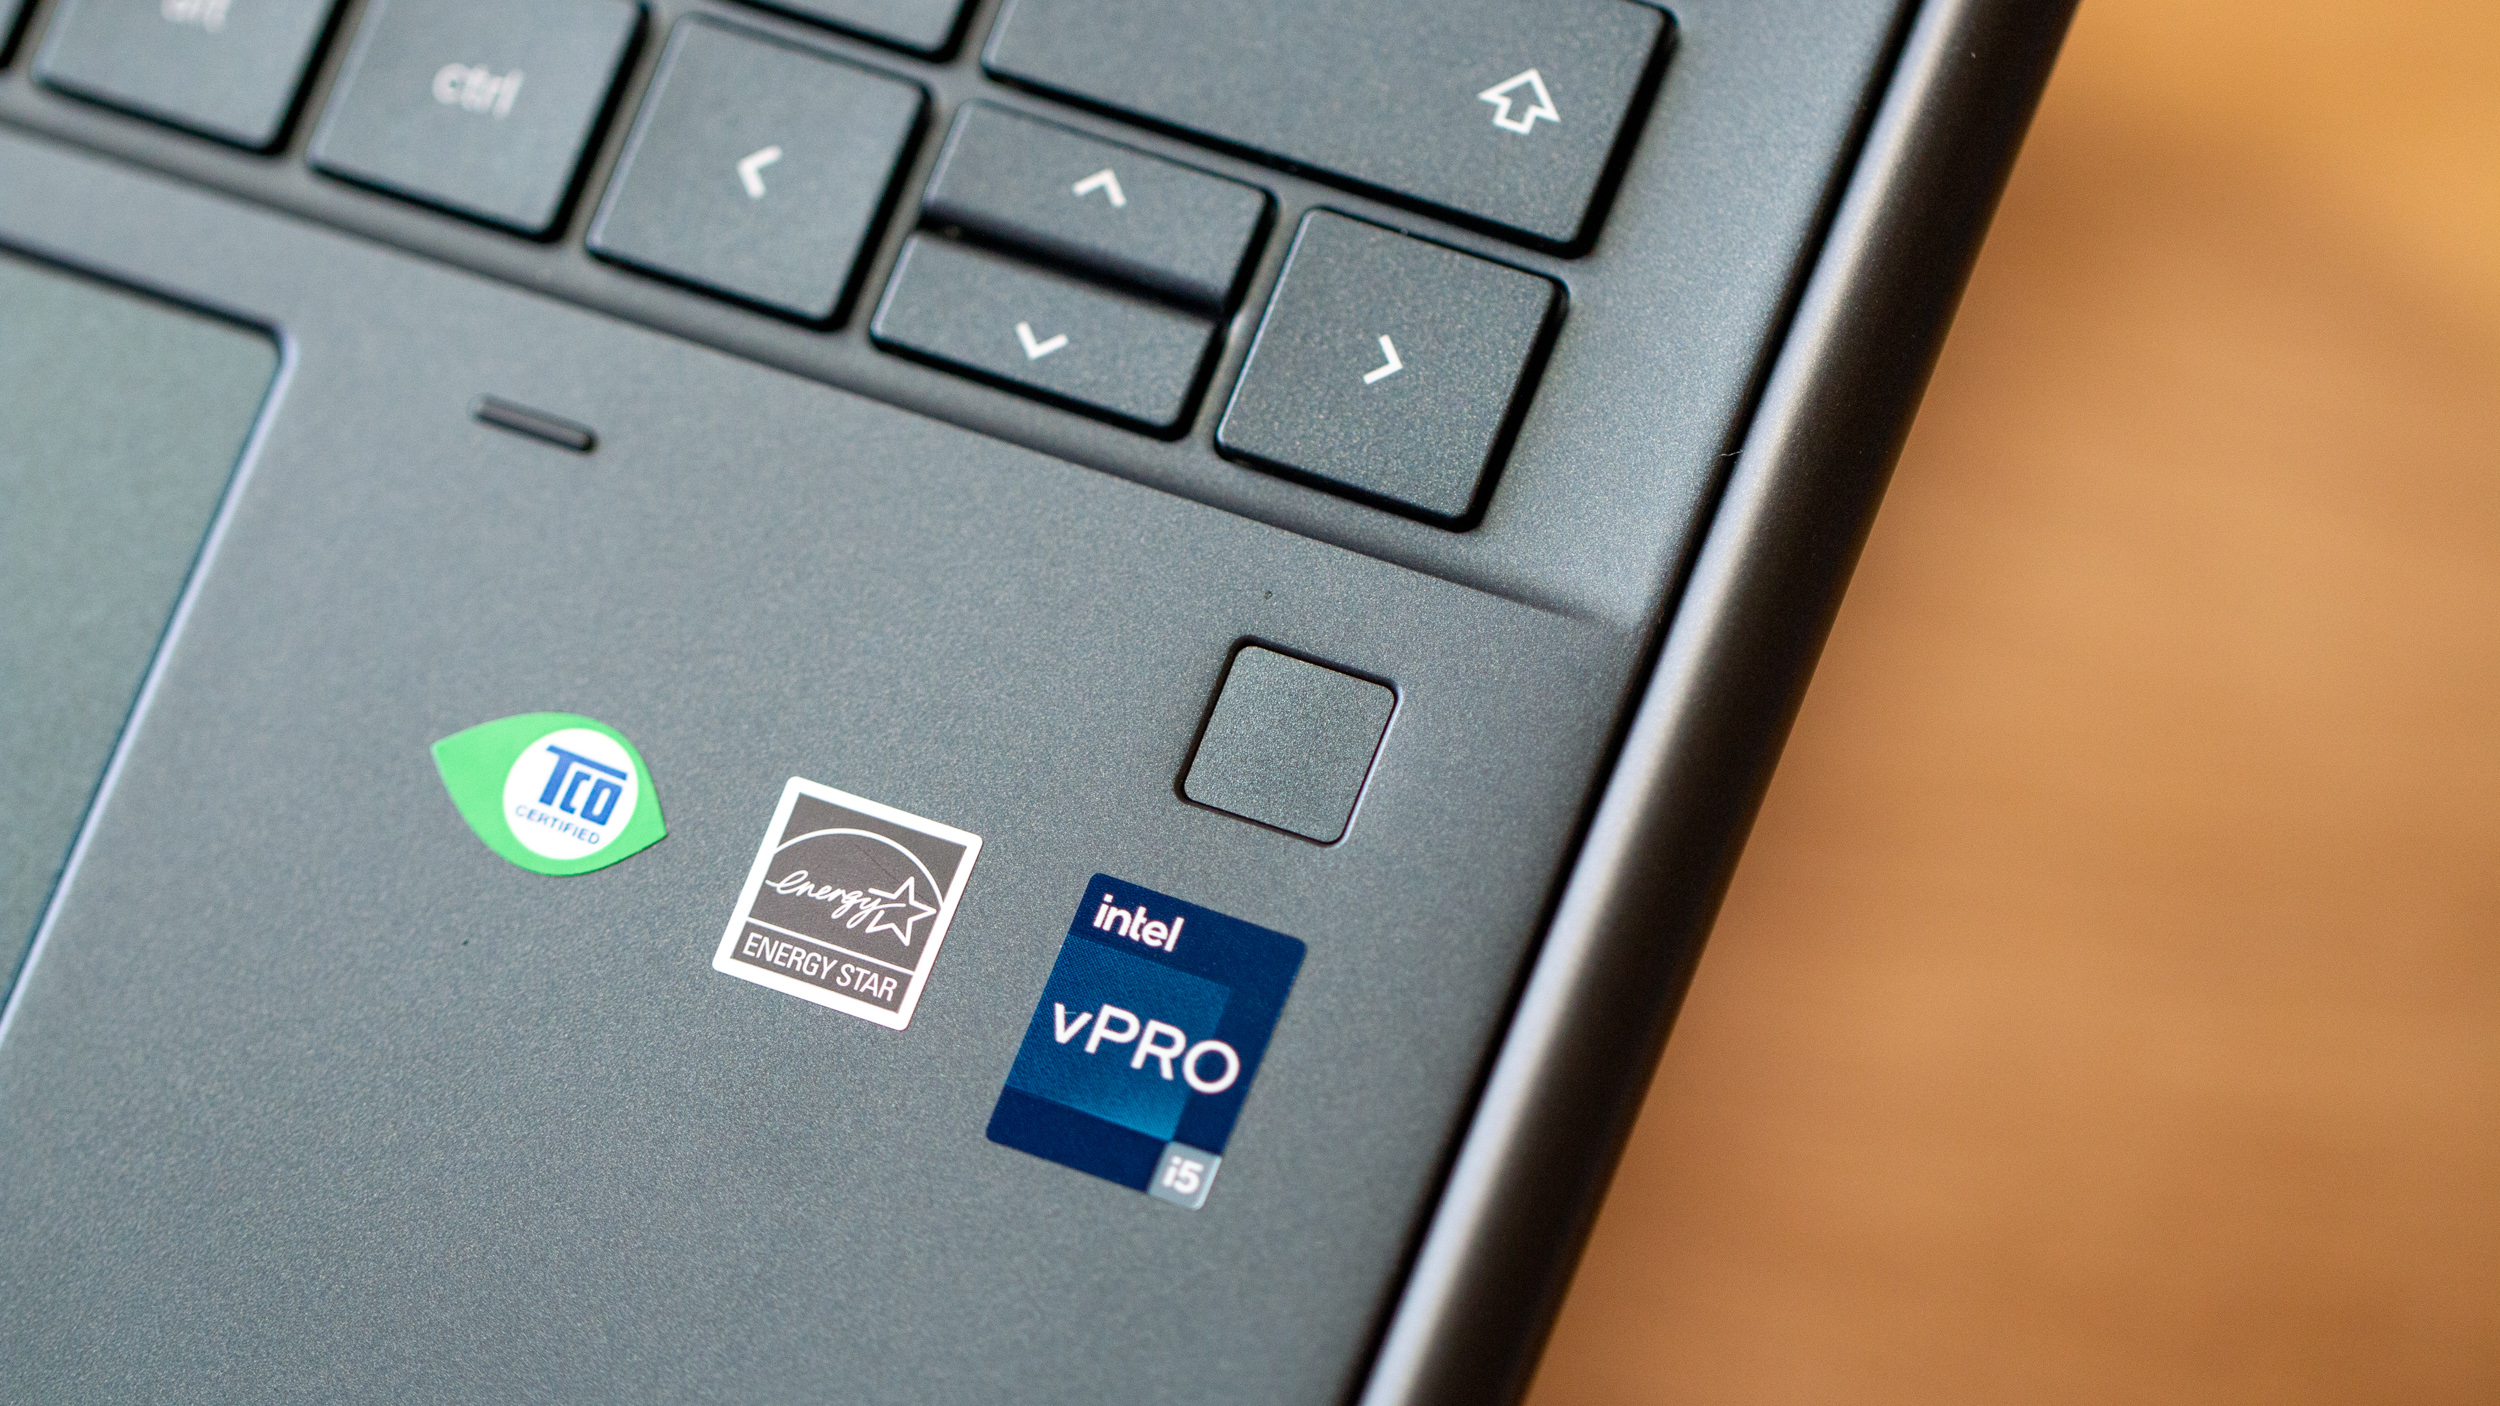 HP Elite Dragonfly Chromebook close-up on fingerprint scanner and Intel logo